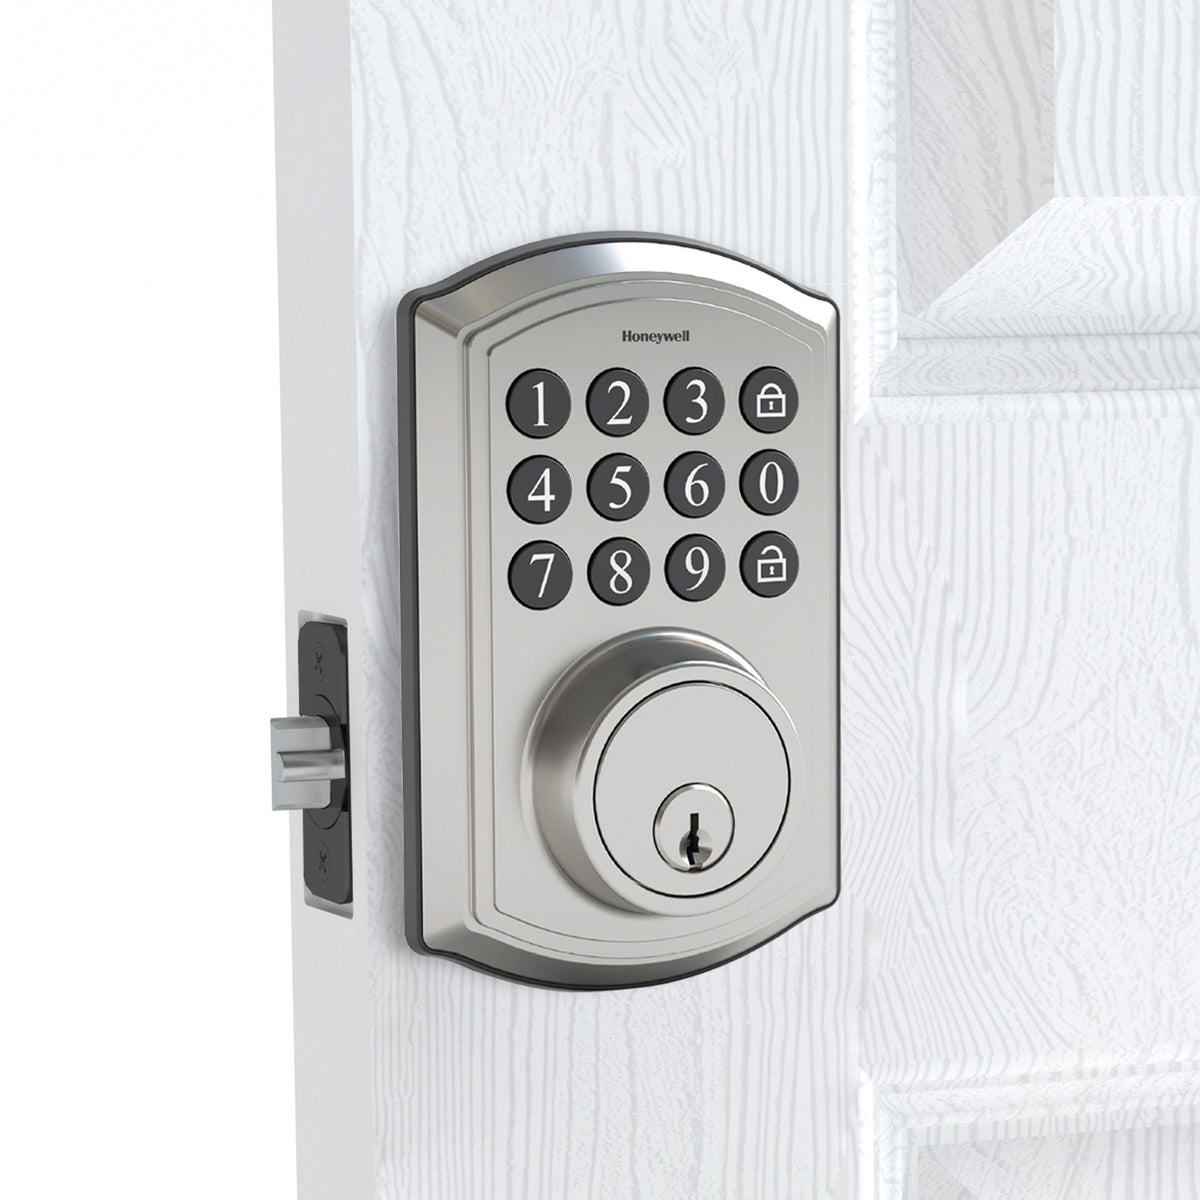 Honeywell 8635024 Digital Deadbolt Door Lock with Electronic Keypad Installed